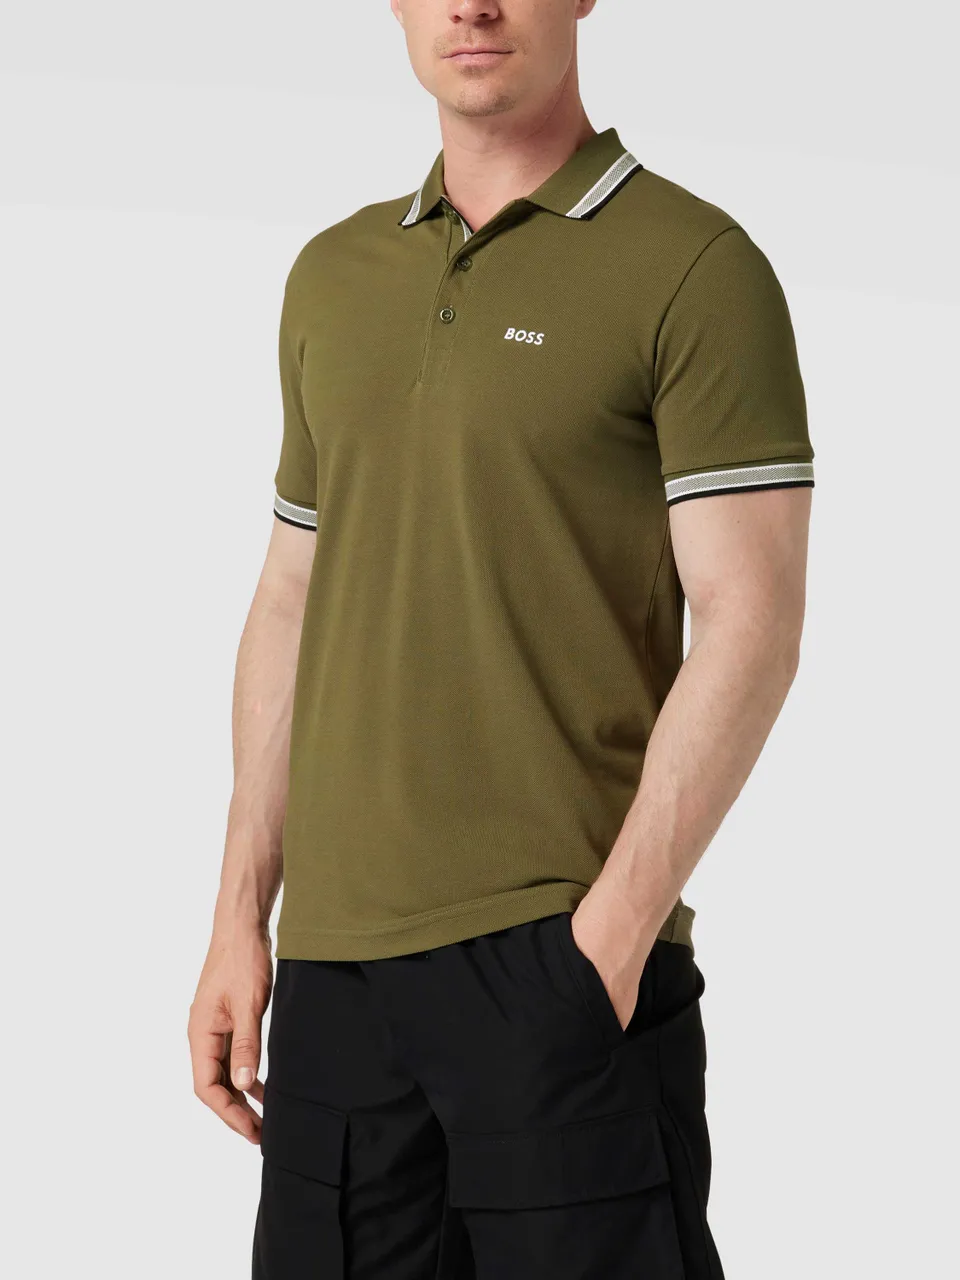 Regular Fit Poloshirt mit Label-Stitching Modell 'Paddy'